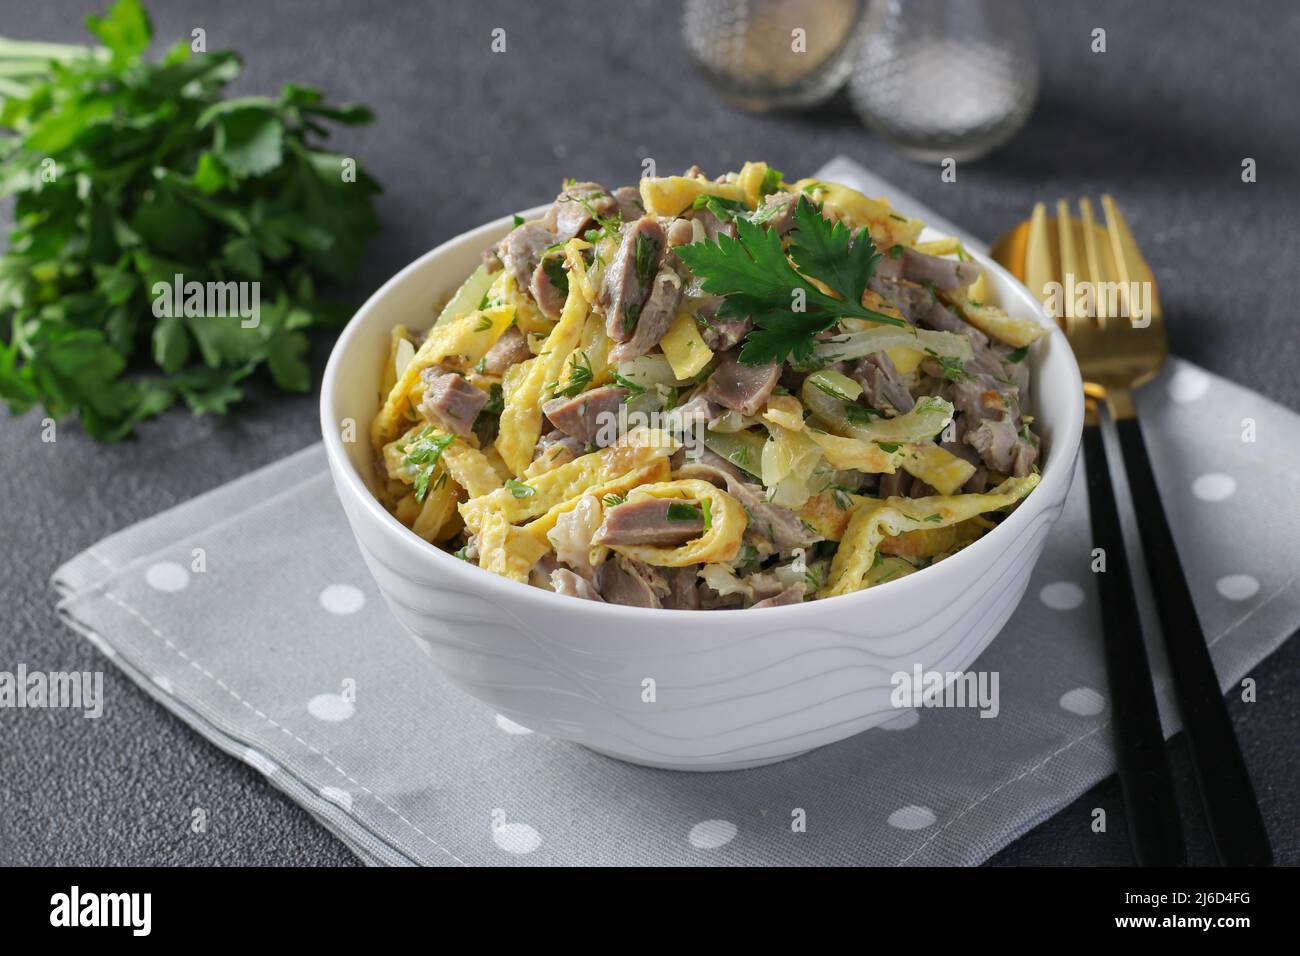 Salade avec stomachs de poulet, crêpes brouillés et oignons frits dans un bol blanc sur fond gris foncé Banque D'Images